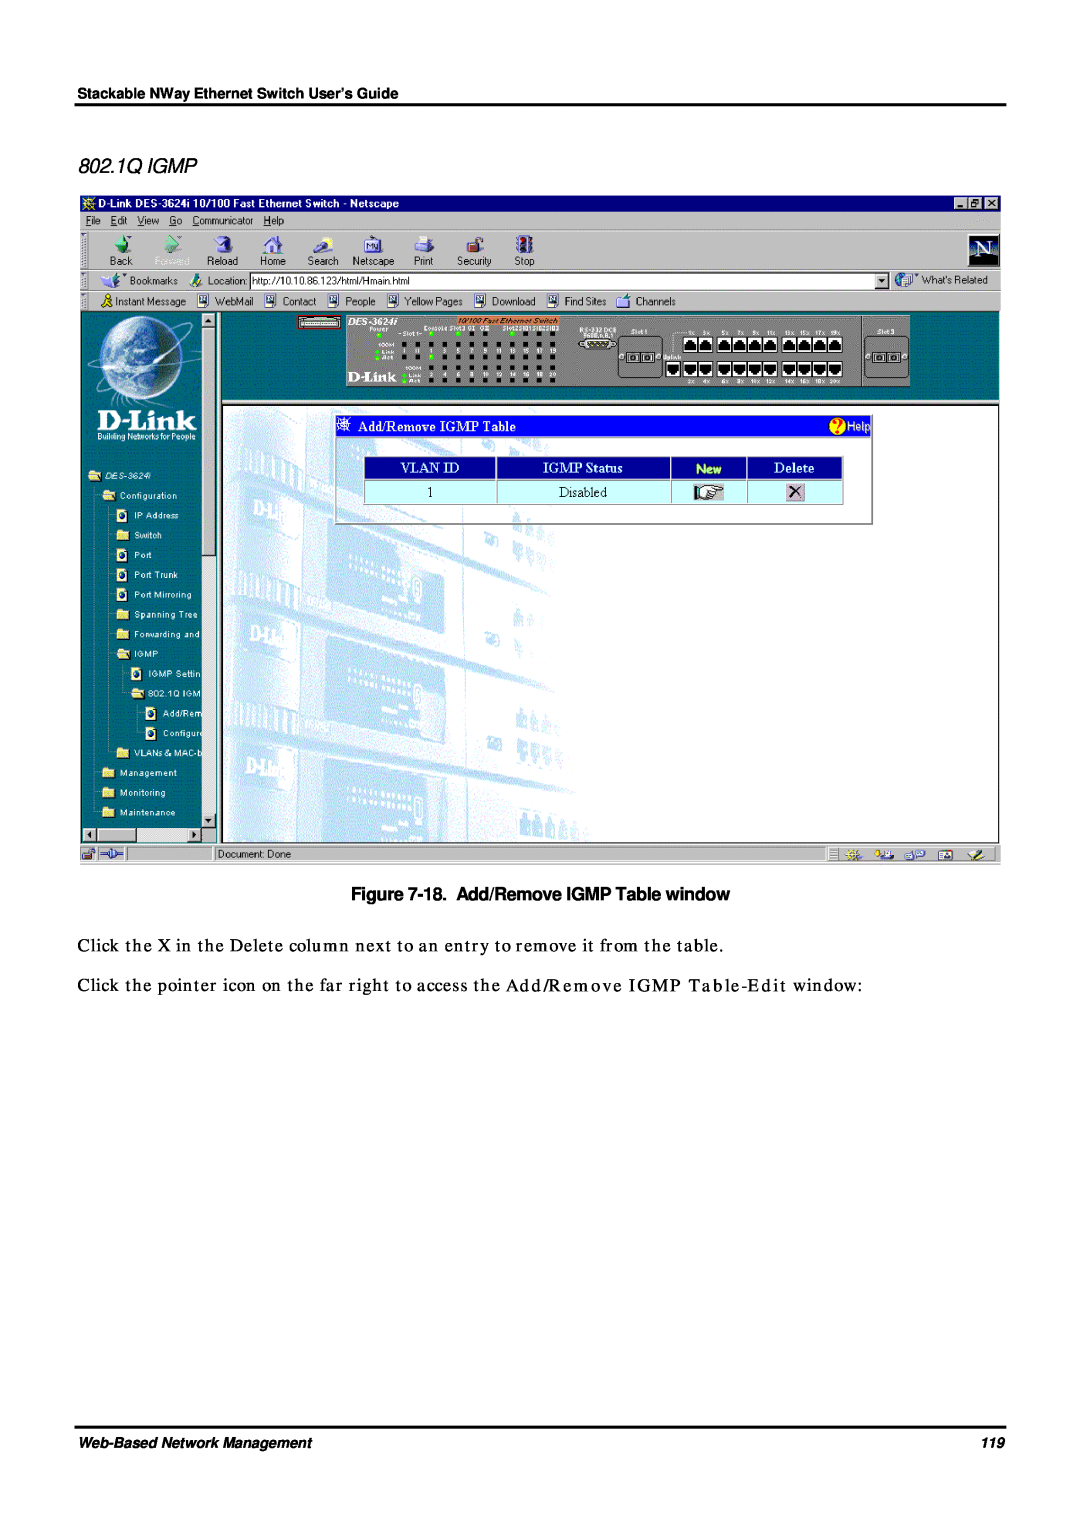 D-Link DES-3624 manual 802.1Q IGMP, 18. Add/Remove IGMP Table window 